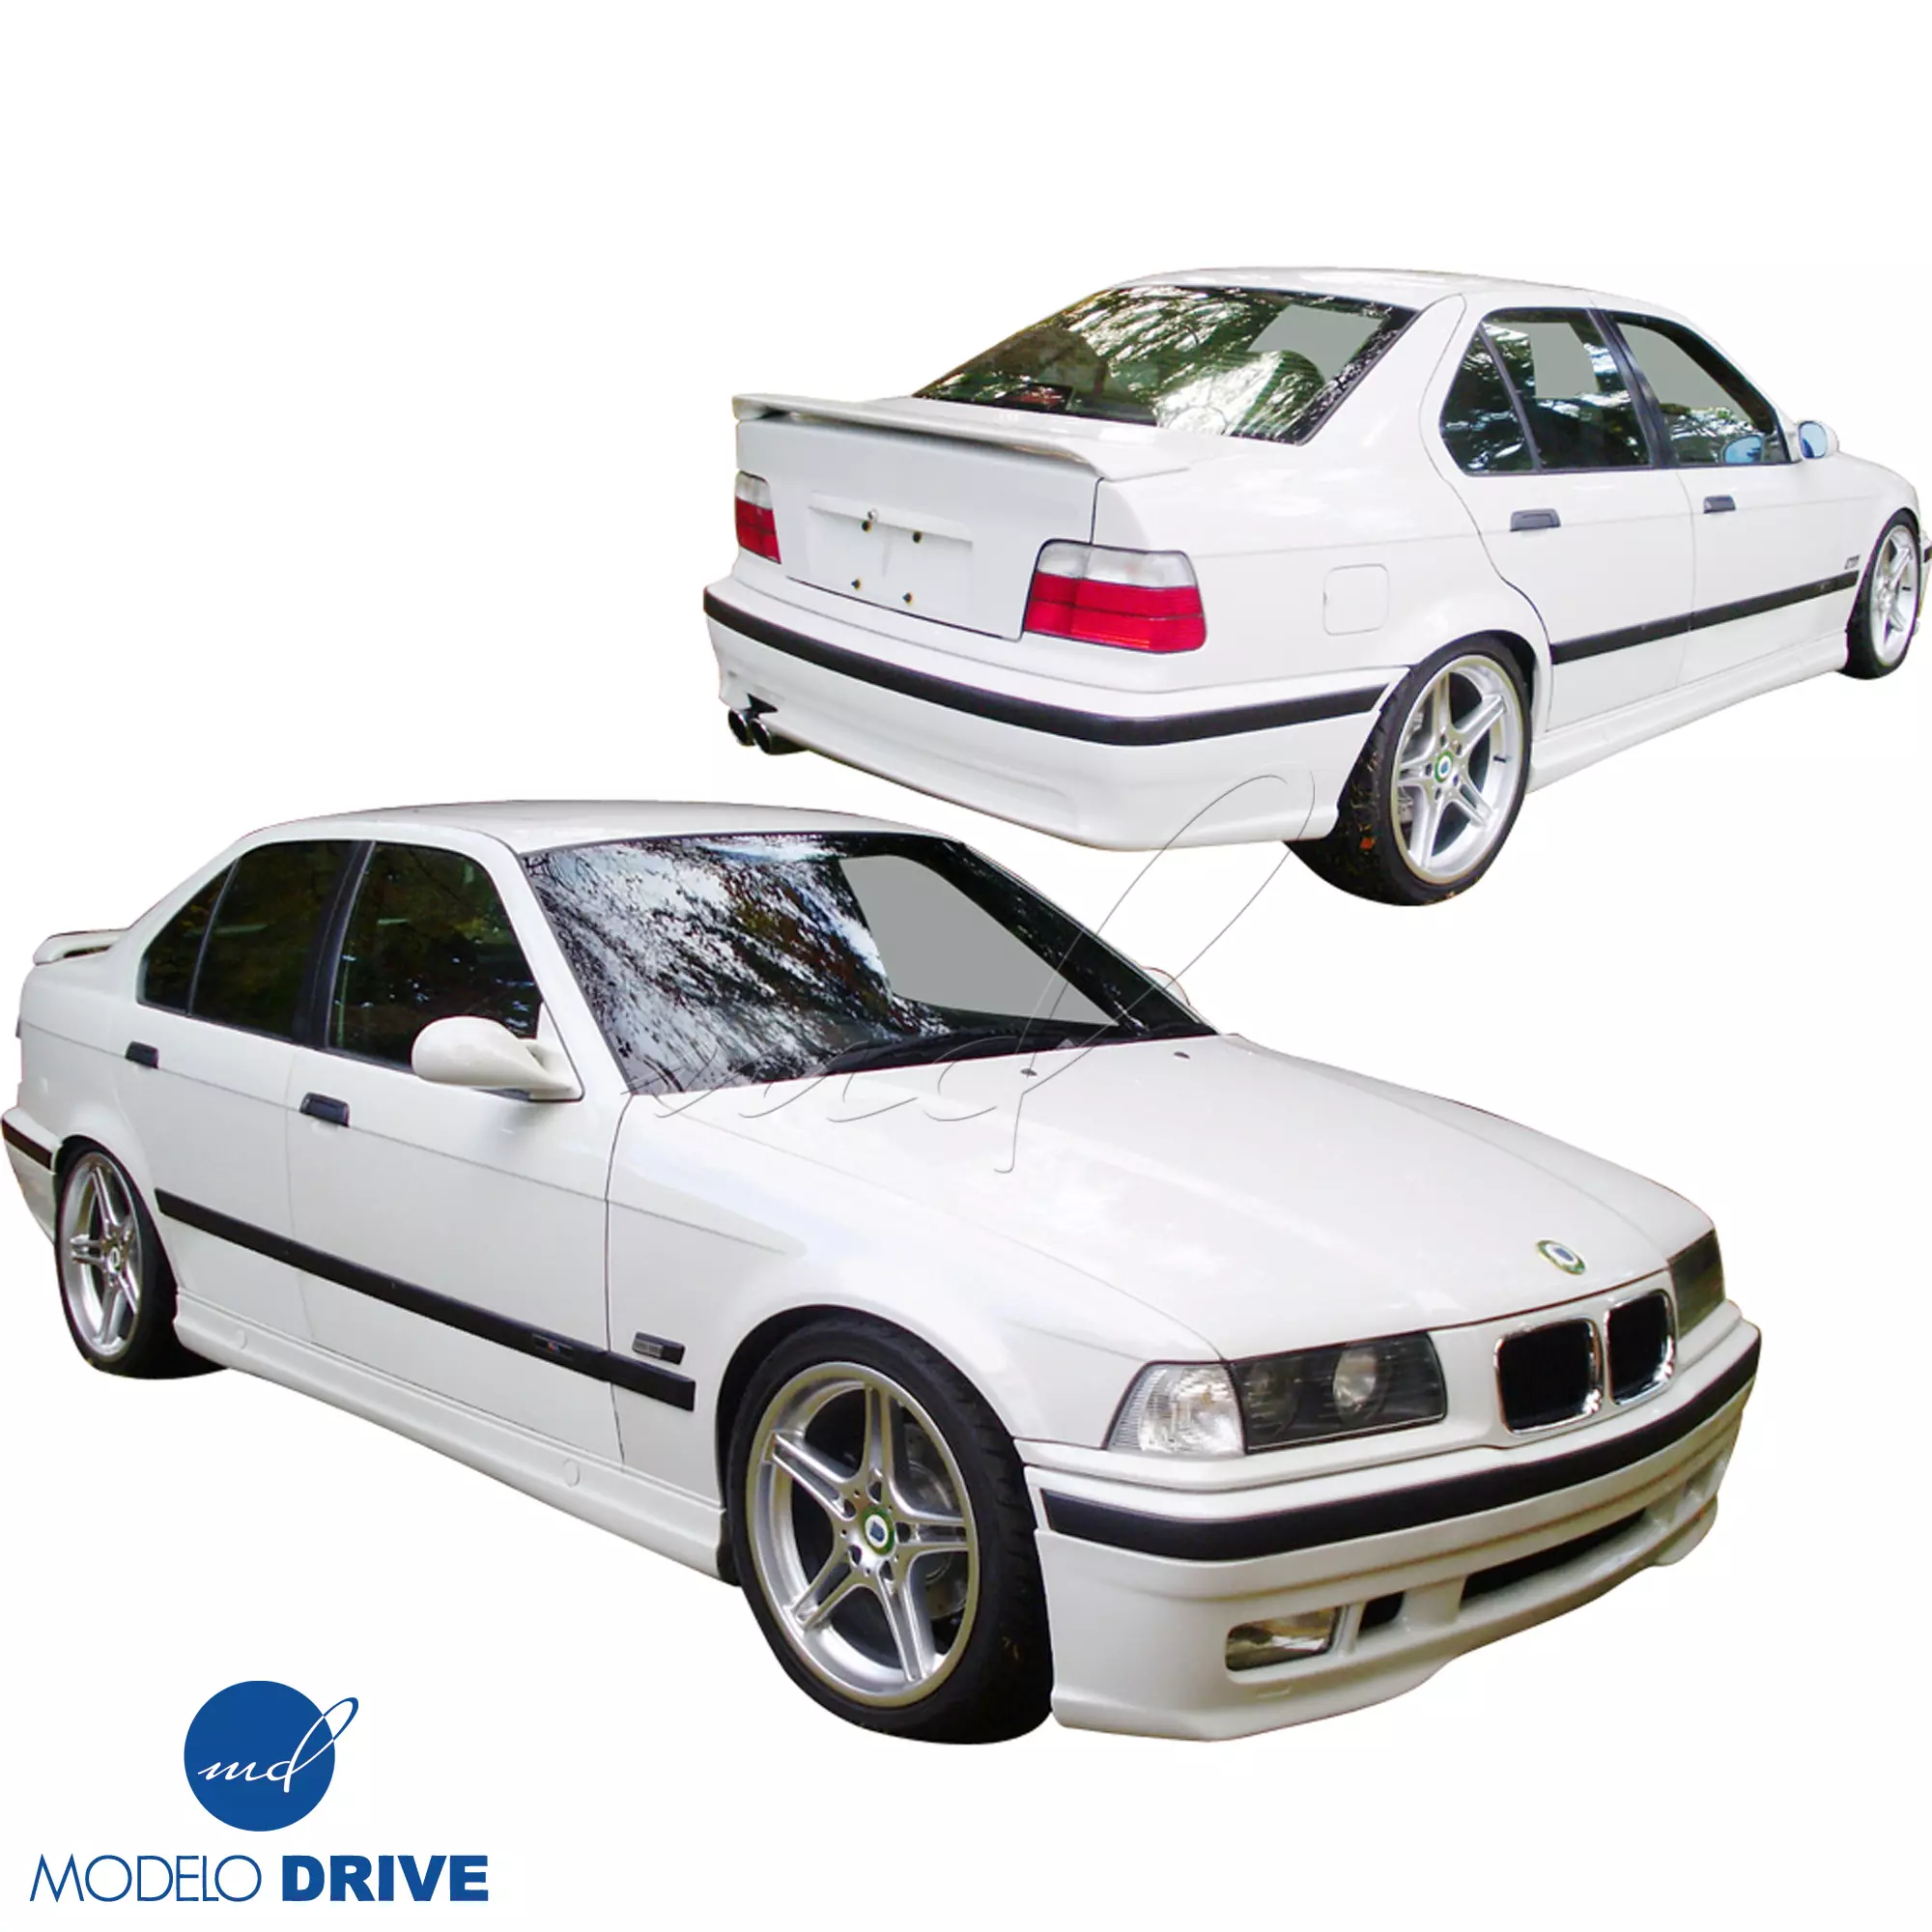 ModeloDrive FRP RDYN Body Kit 4pc > BMW 3-Series E36 1992-1998 > 2/4dr - Image 1